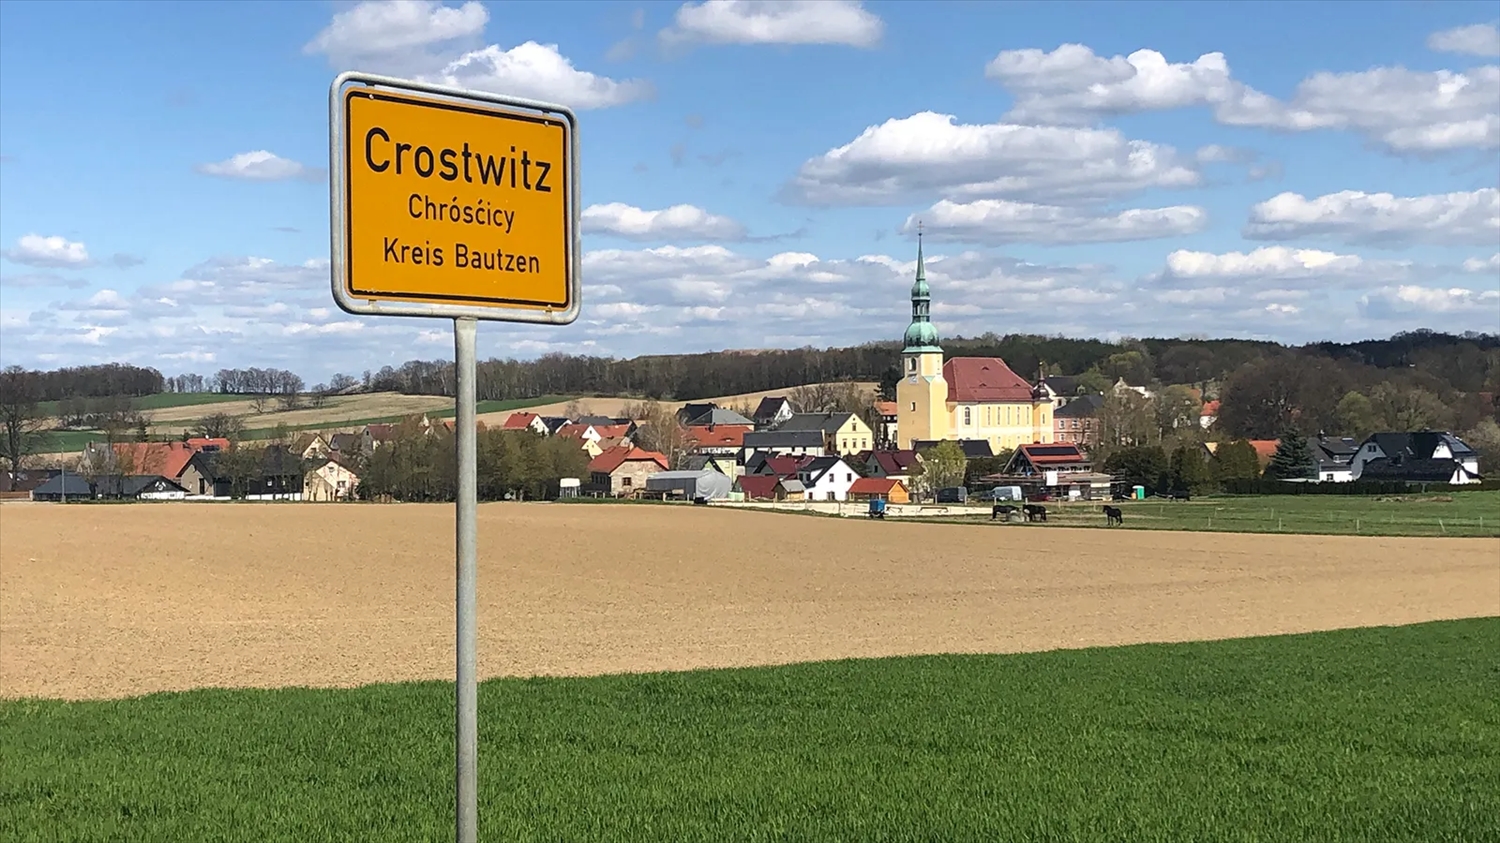 Ở Crostwitz (hay Chrósćicy), khoảng 90% cư dân là người Sorbian